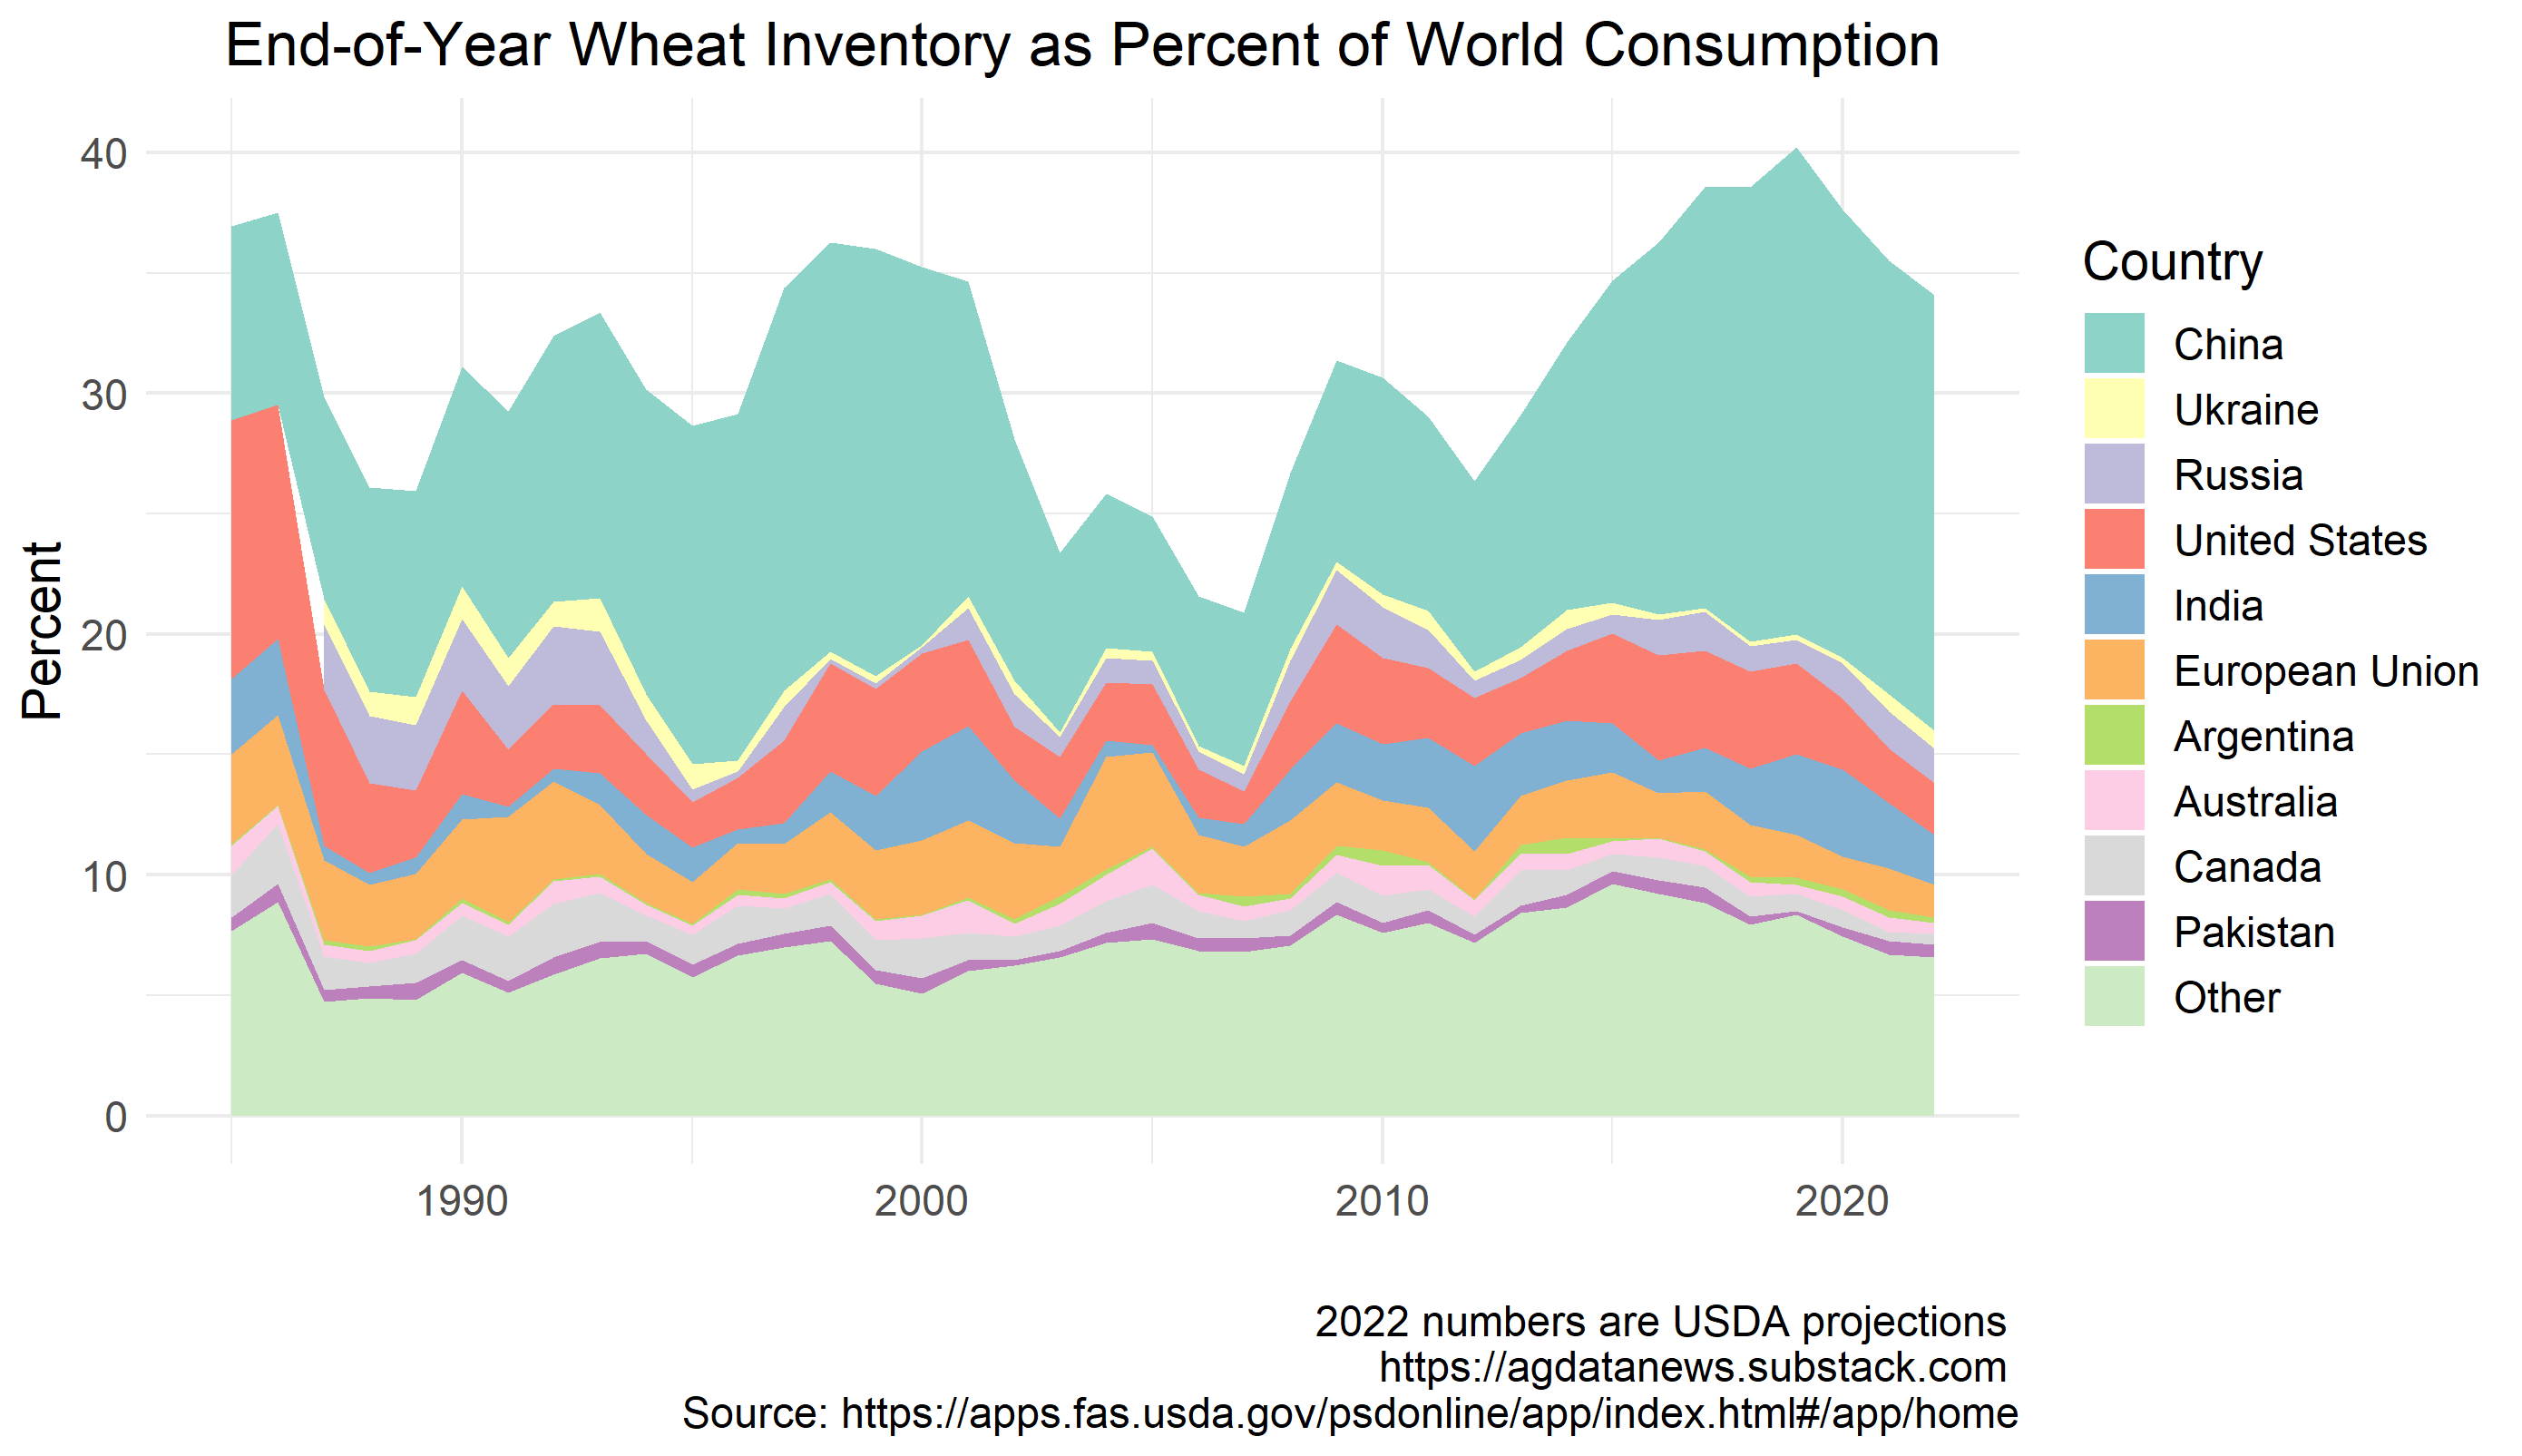 Запаси пшениці на кінець року у відсотках світового споживання